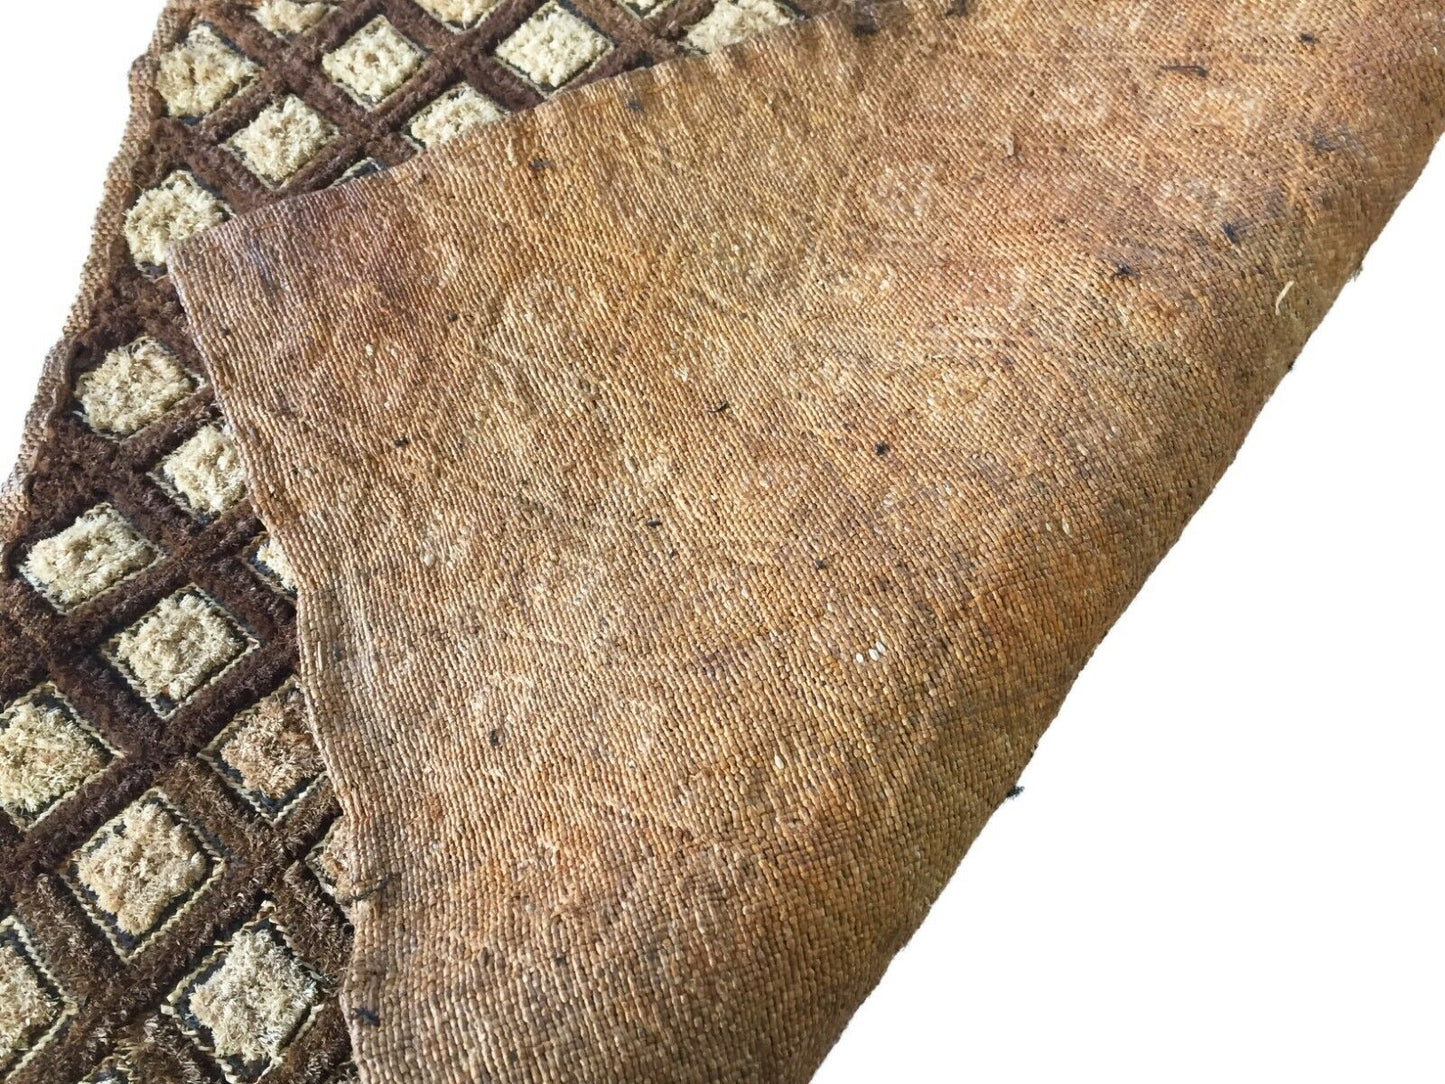 #1845 Superb African Kuba Kasai Velvet Raffia Textile Zaire w/ Amber Beads20 "by 23